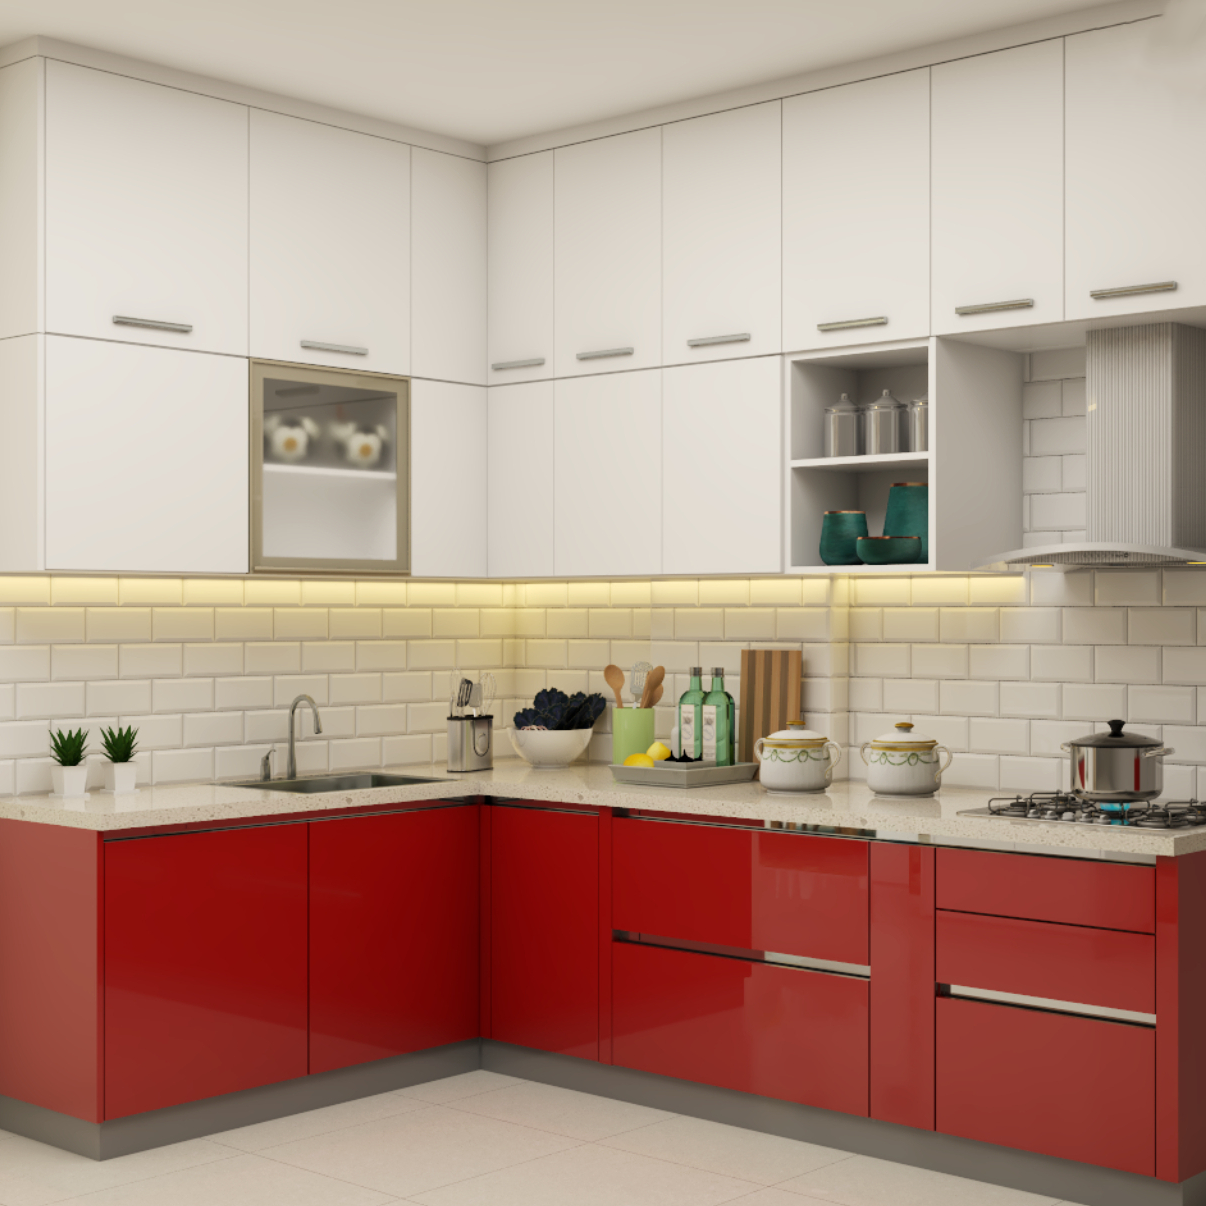 Modular Kitchen Design   Kitchen Interior with Cost   Livspace